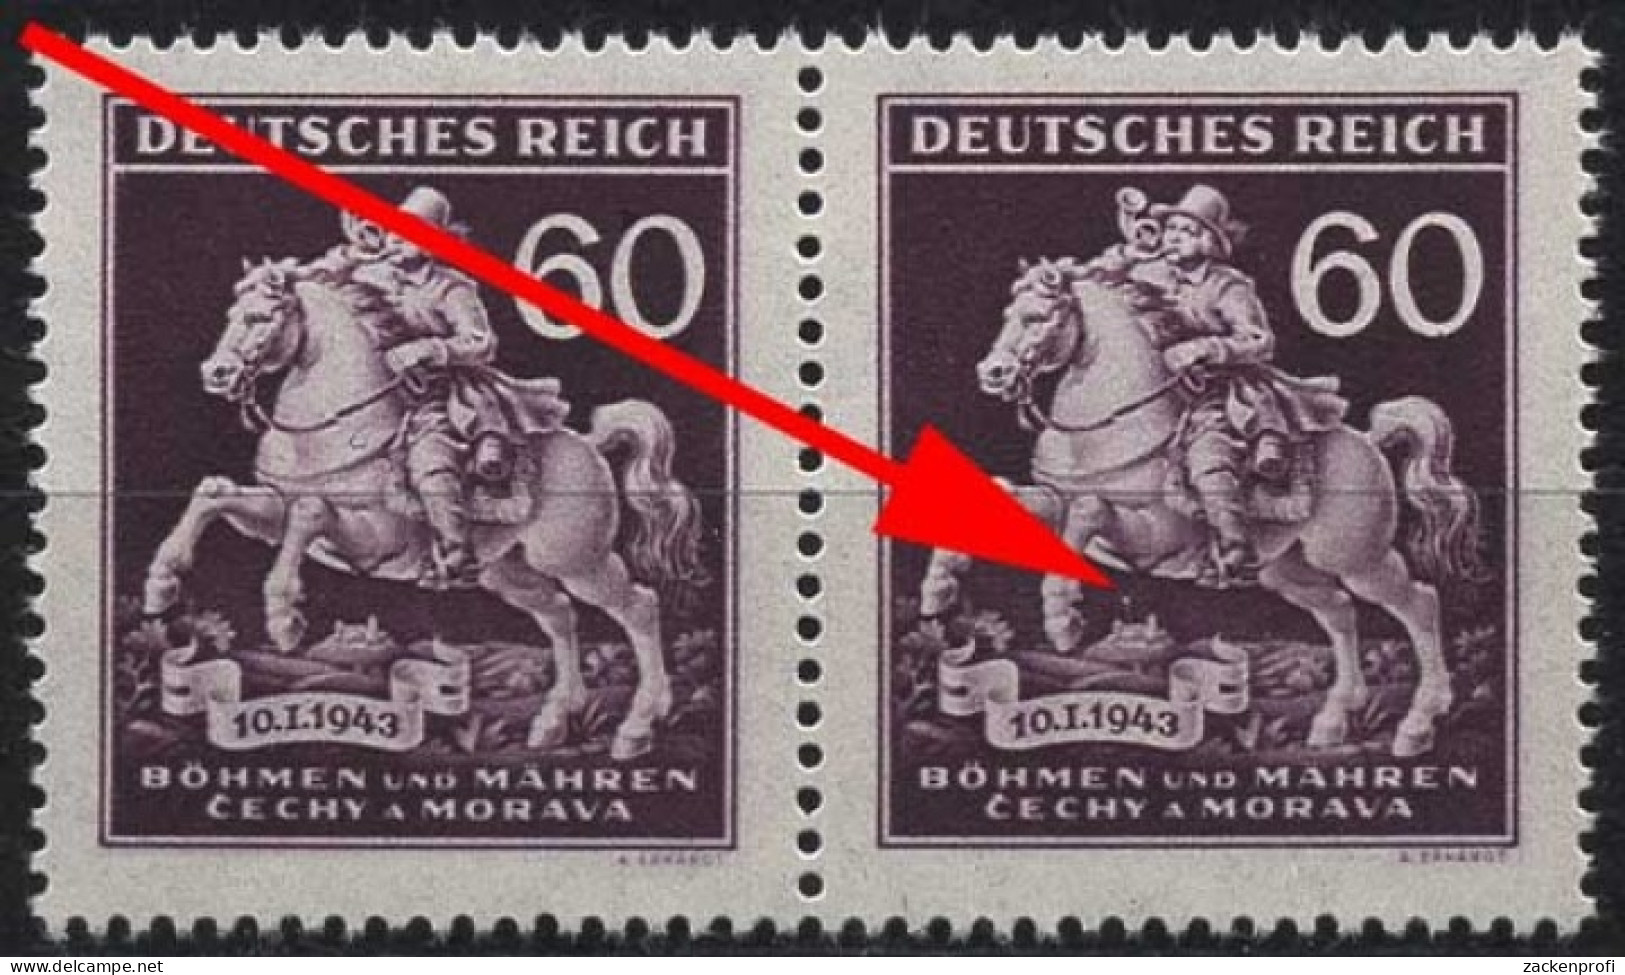 Böhmen & Mähren 113 Postfrisch Mit Plattenfehler XIX - Ungebraucht